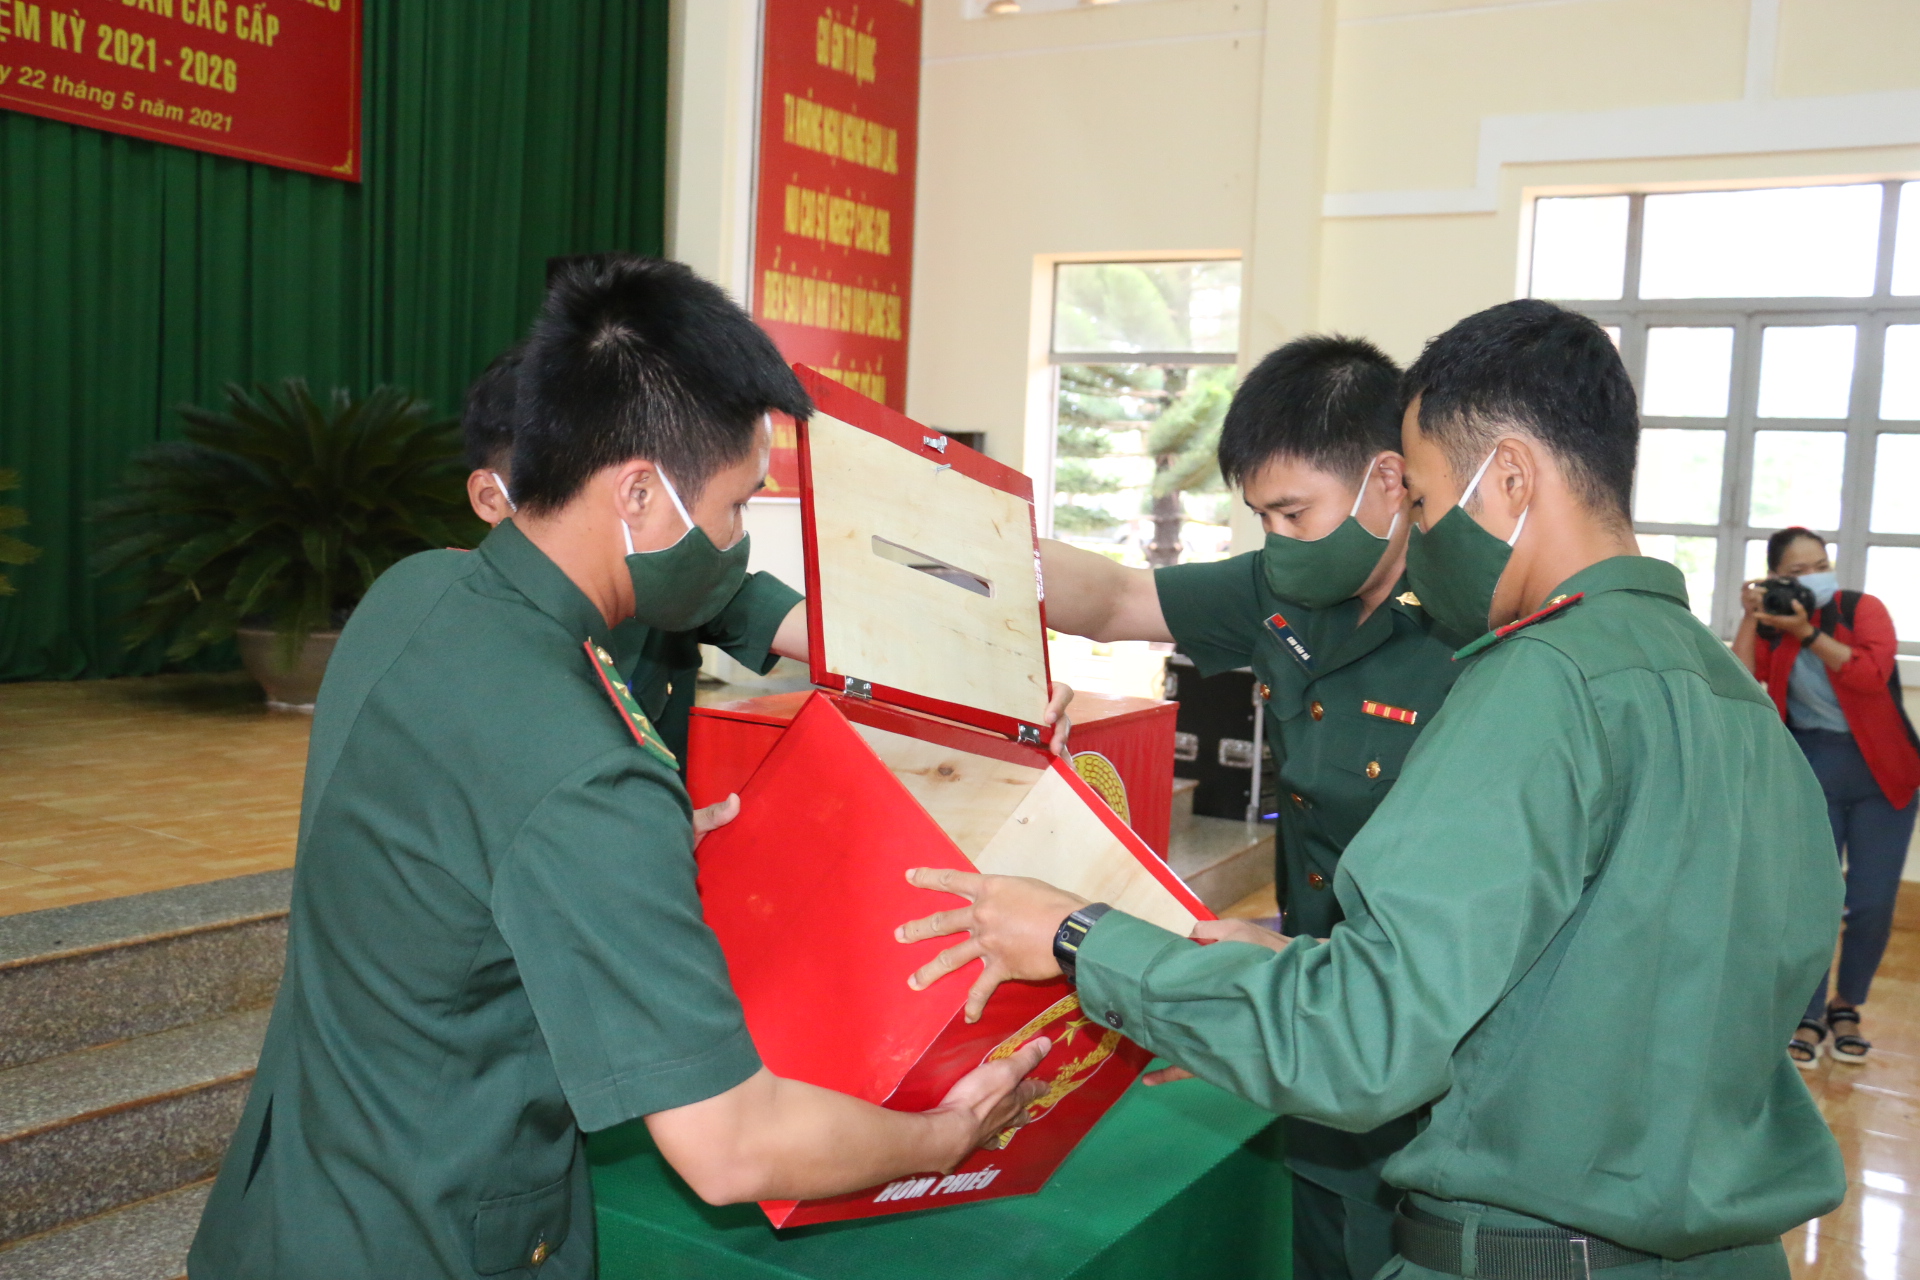 Đắk Nông: Bộ đội Biên phòng vùng biên đảm bảo an toàn khi bầu cử sớm - Ảnh 6.